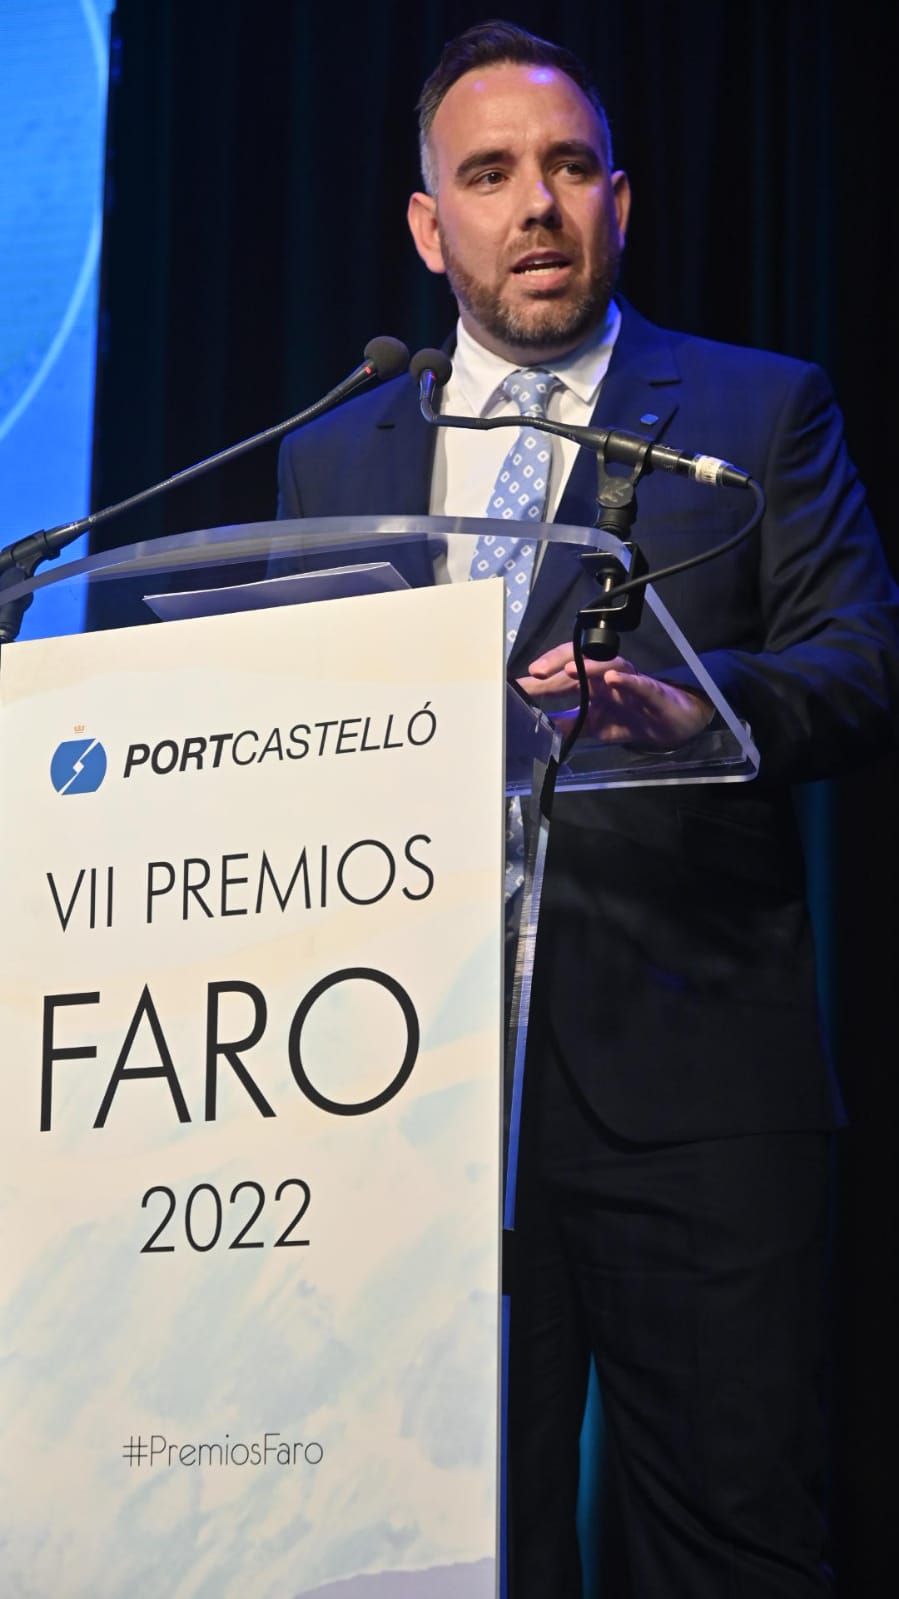 Las imágenes de la gala de los Premios Faro de PortCastelló